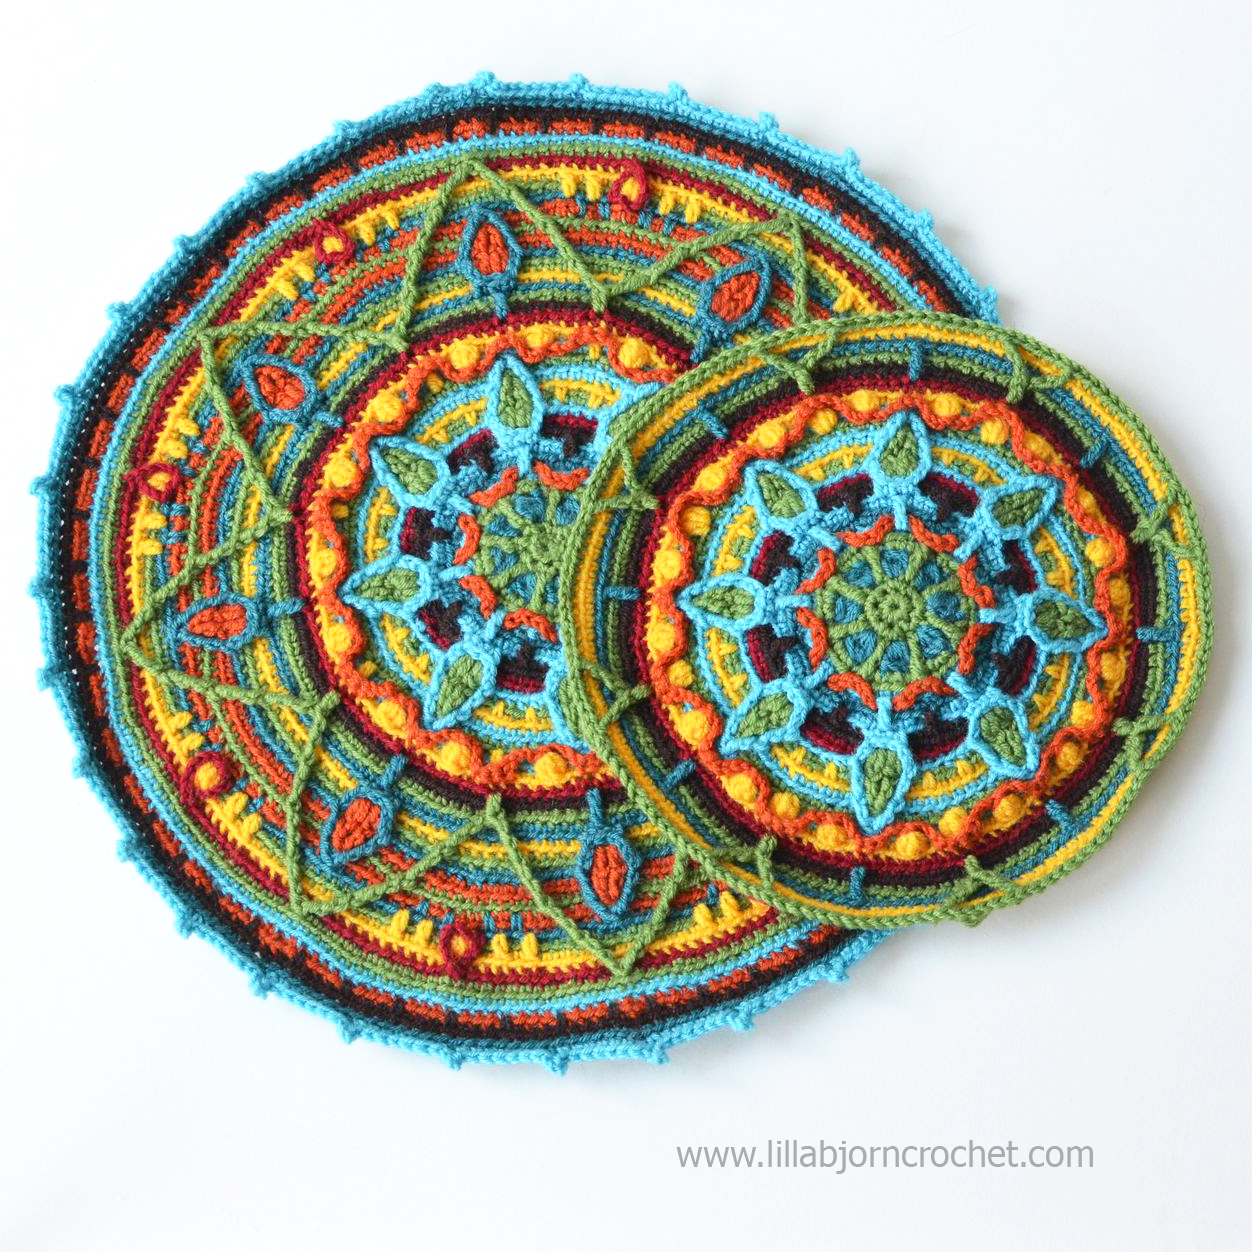 Overlay Crochet Mandala by Lilla Bjorn Crochet (lillabjorncrochet.com)